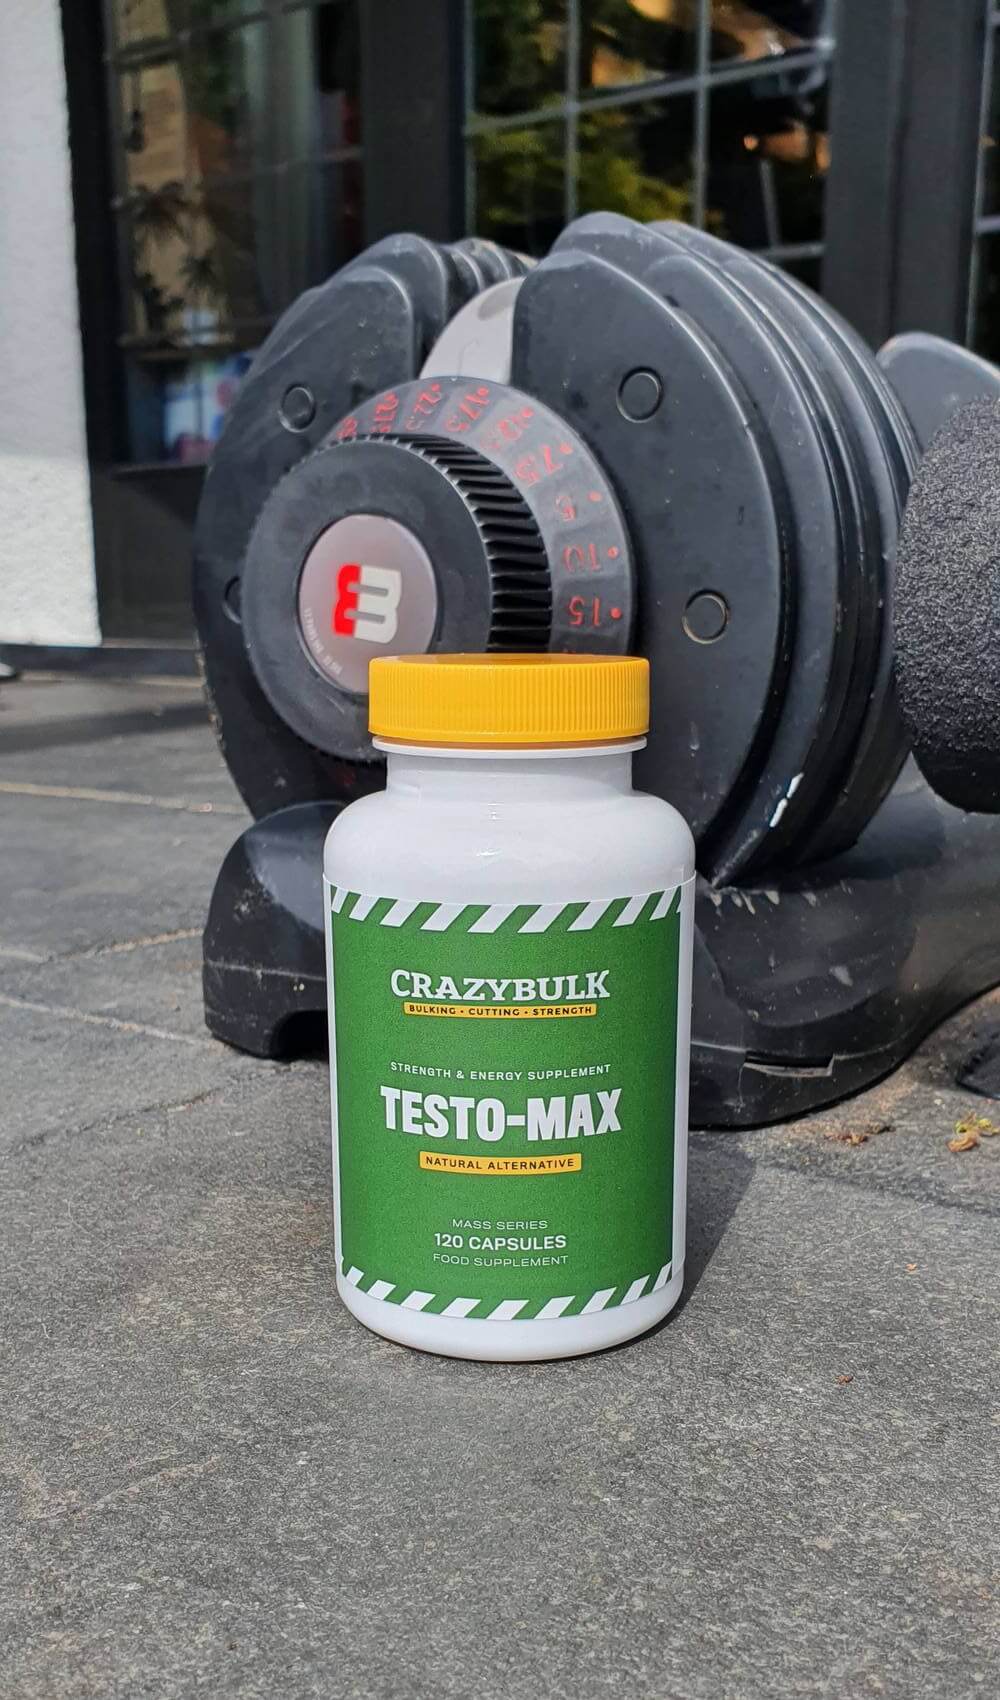 testo-max testosterone supplement